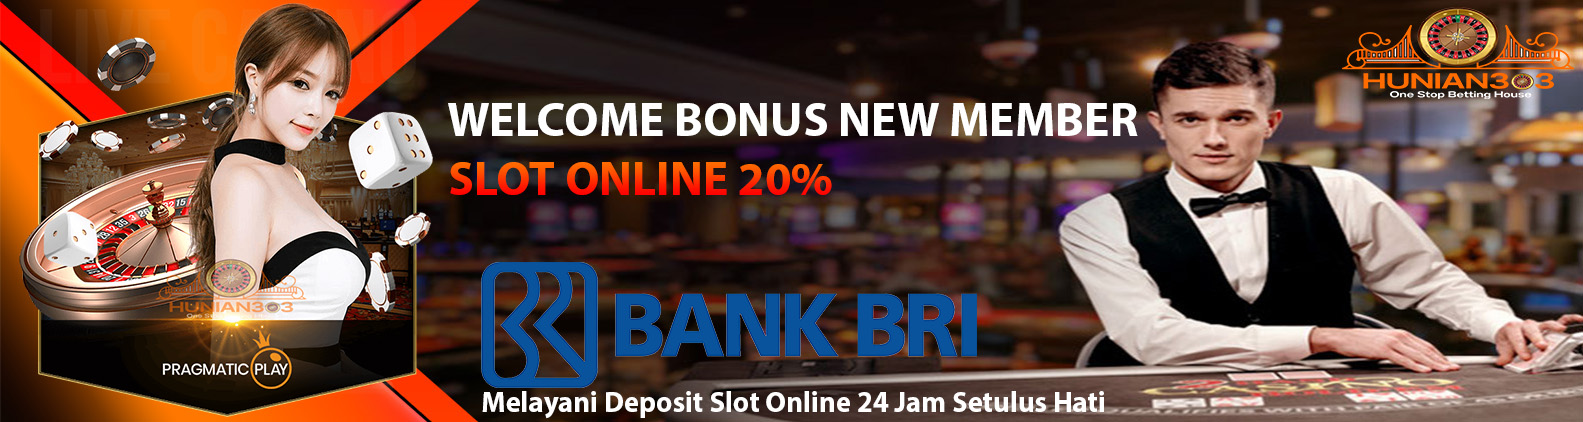 Hunian303 | Situs Judi Slot Online Deposit BRI 24jam